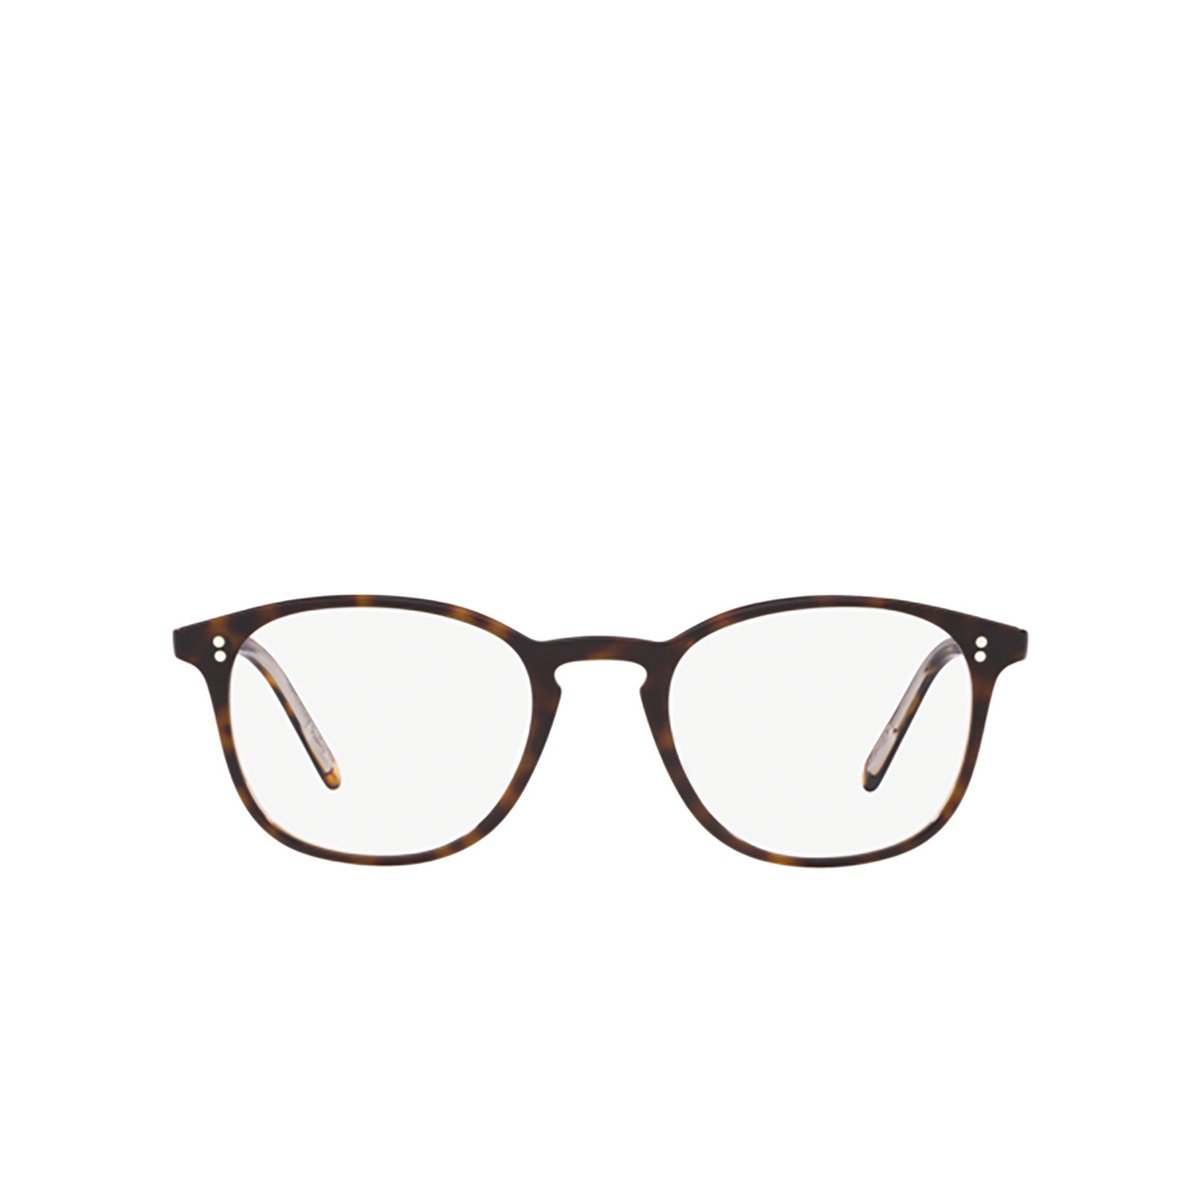 Oliver Peoples FINLEY VINTAGE Eyeglasses 1666 362 / Horn - front view